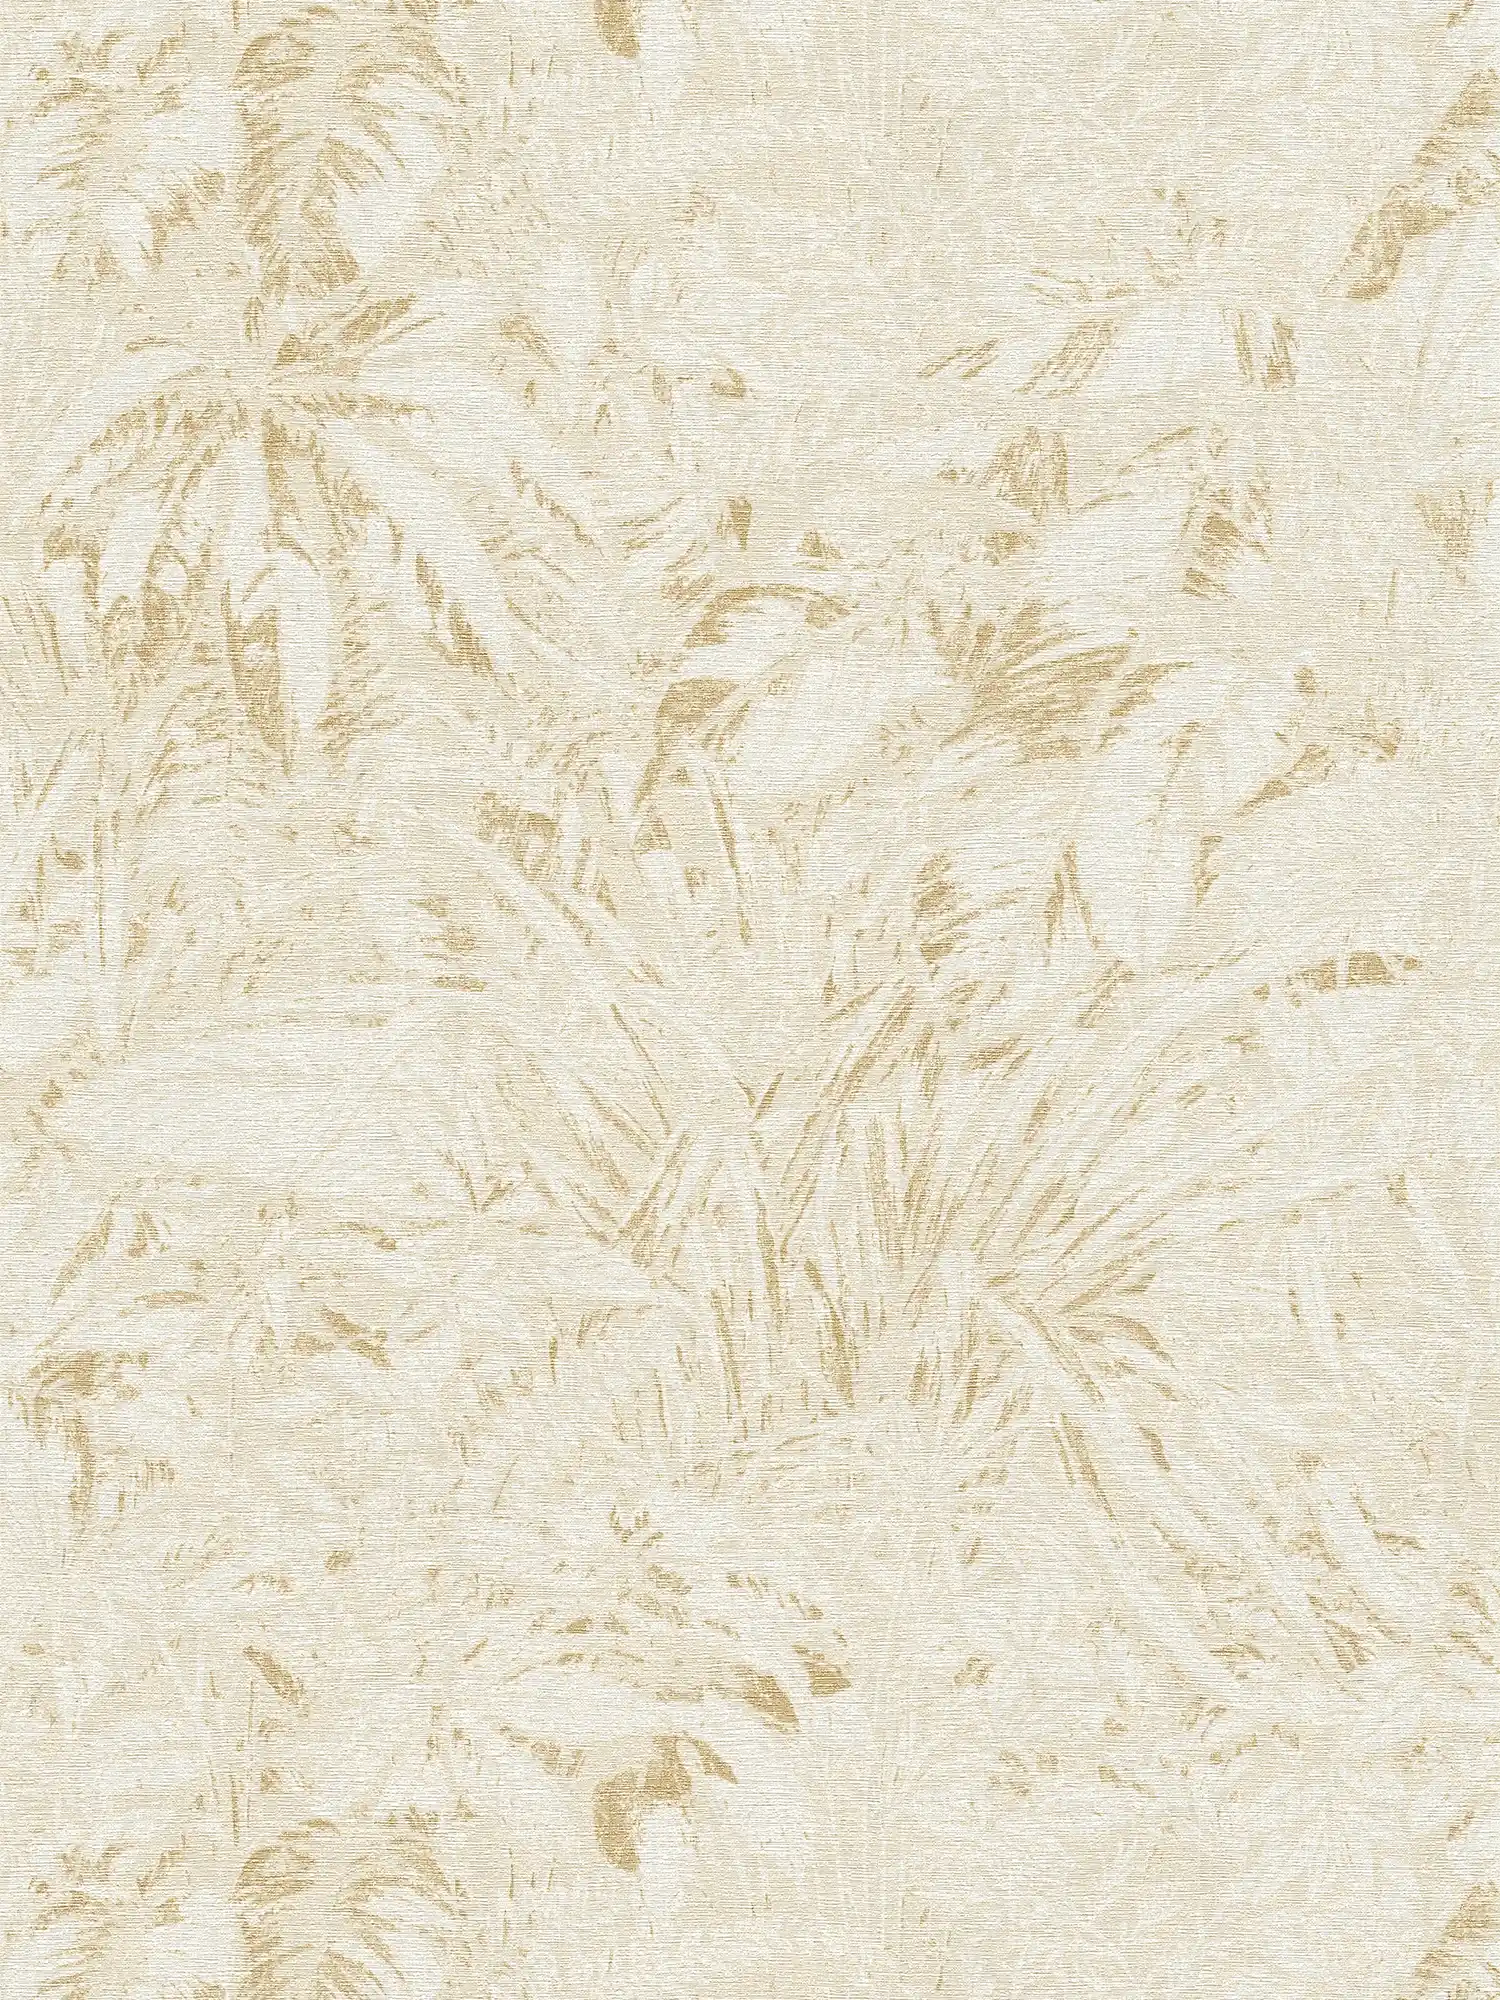         Dschungel Tapete in sanften Farben mit Blatt Muster – Beige, Weiß, Gold
    